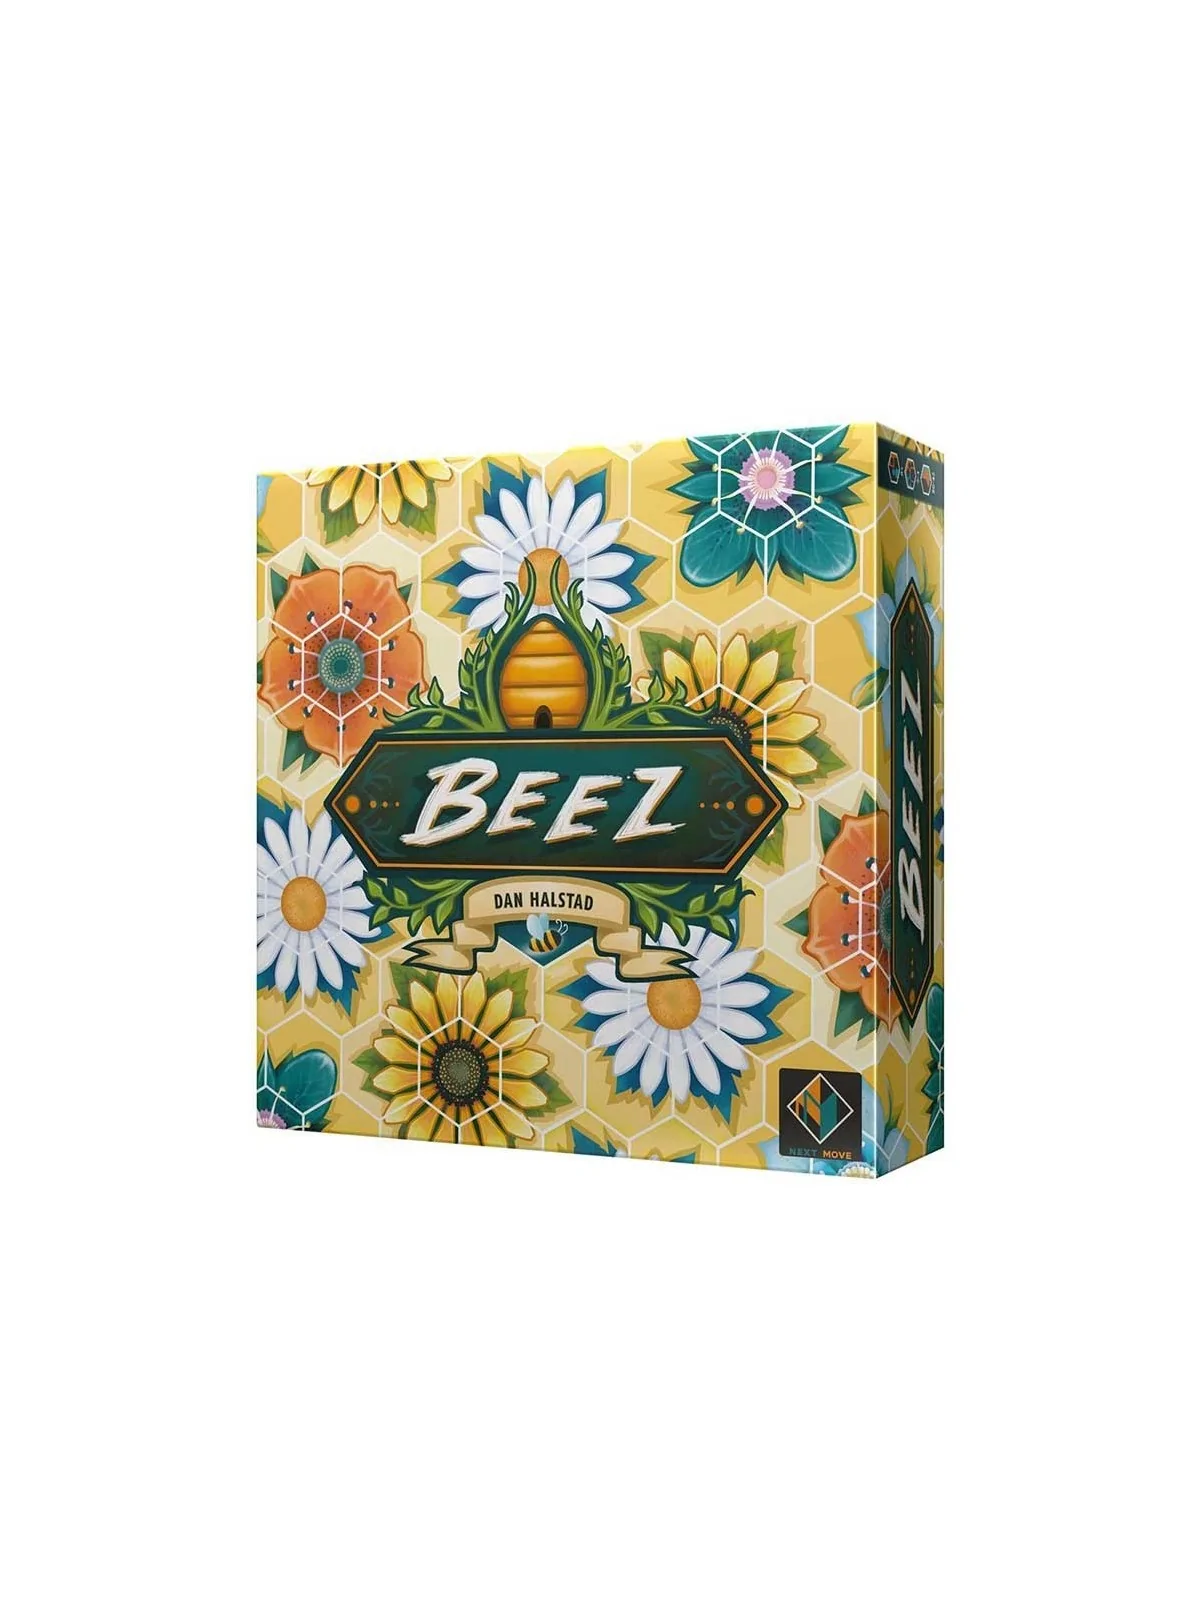 Comprar Beez barato al mejor precio 17,05 € de Plan B Games